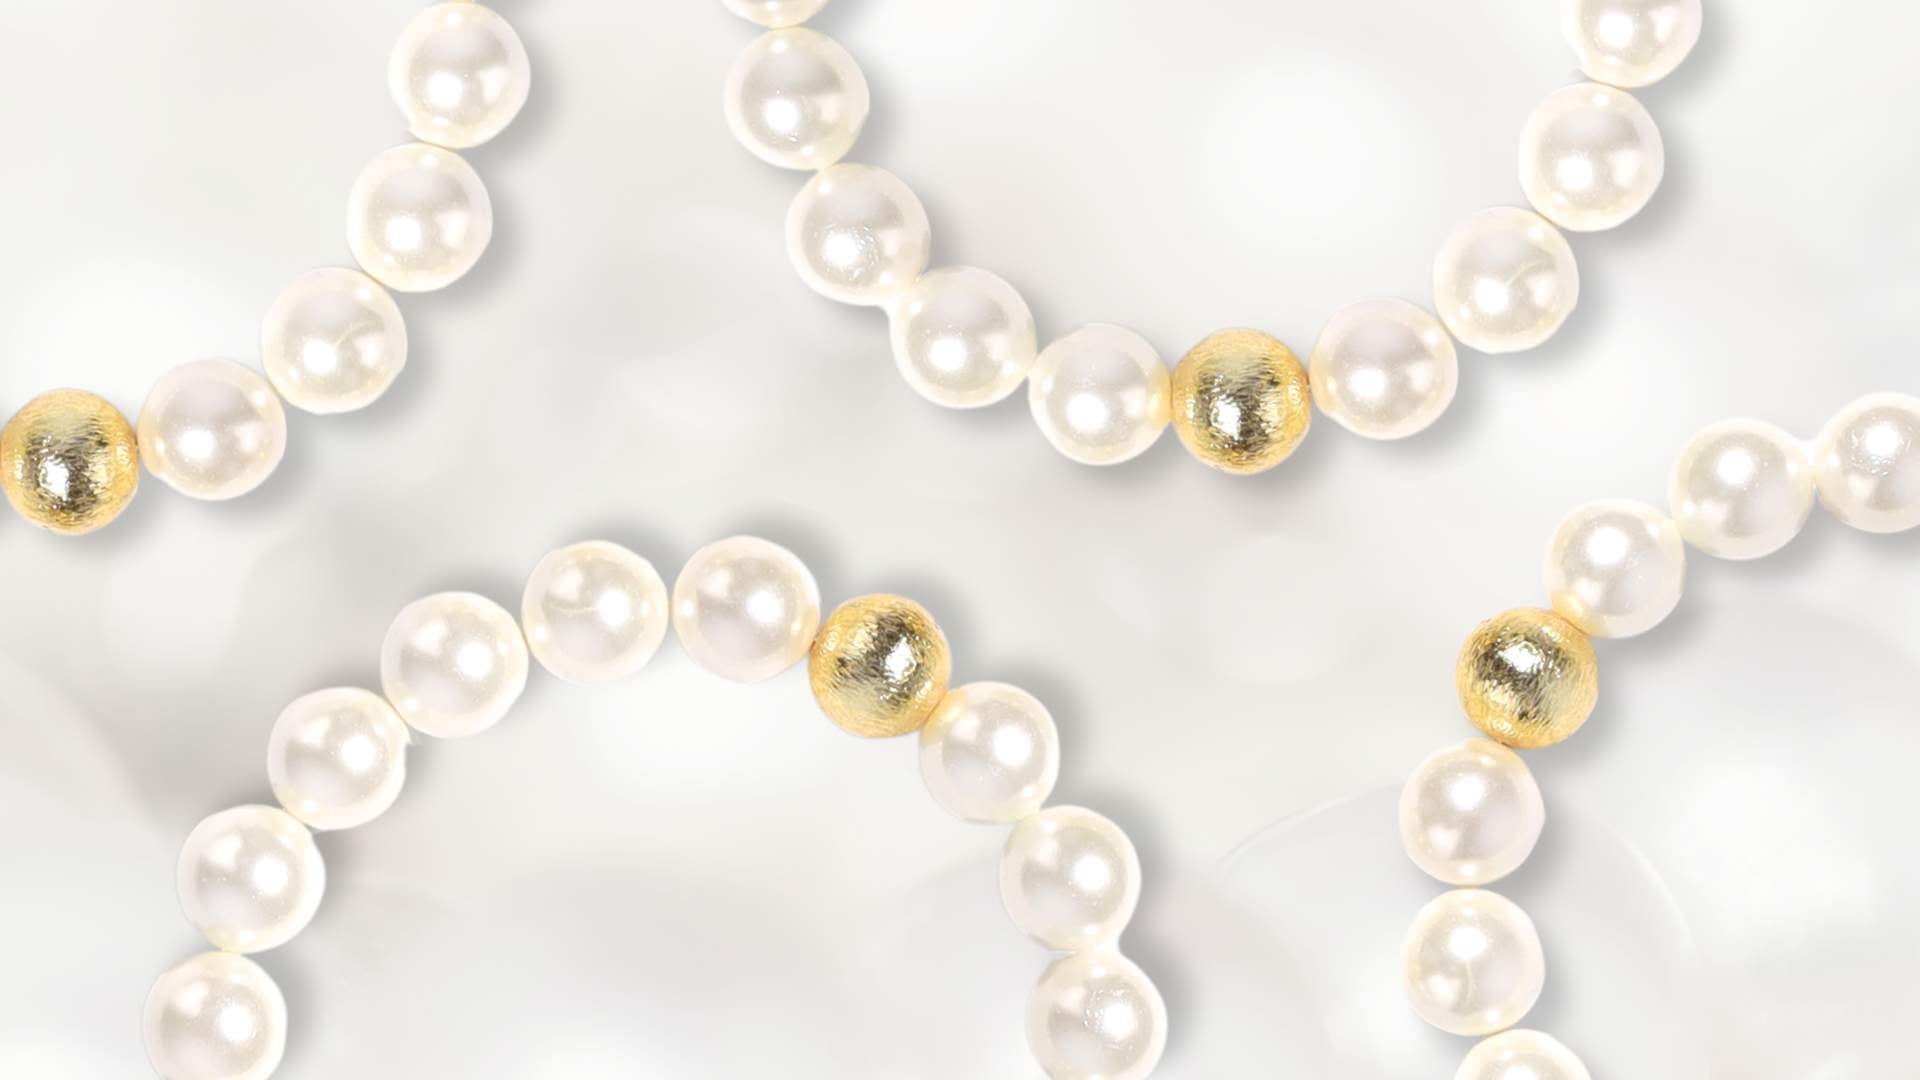 Bracelet Stacks and Bangle Sets | Solange Crystal and Chain Bracelet | Odette Gold Chain Bracelet | BuDhaGirl